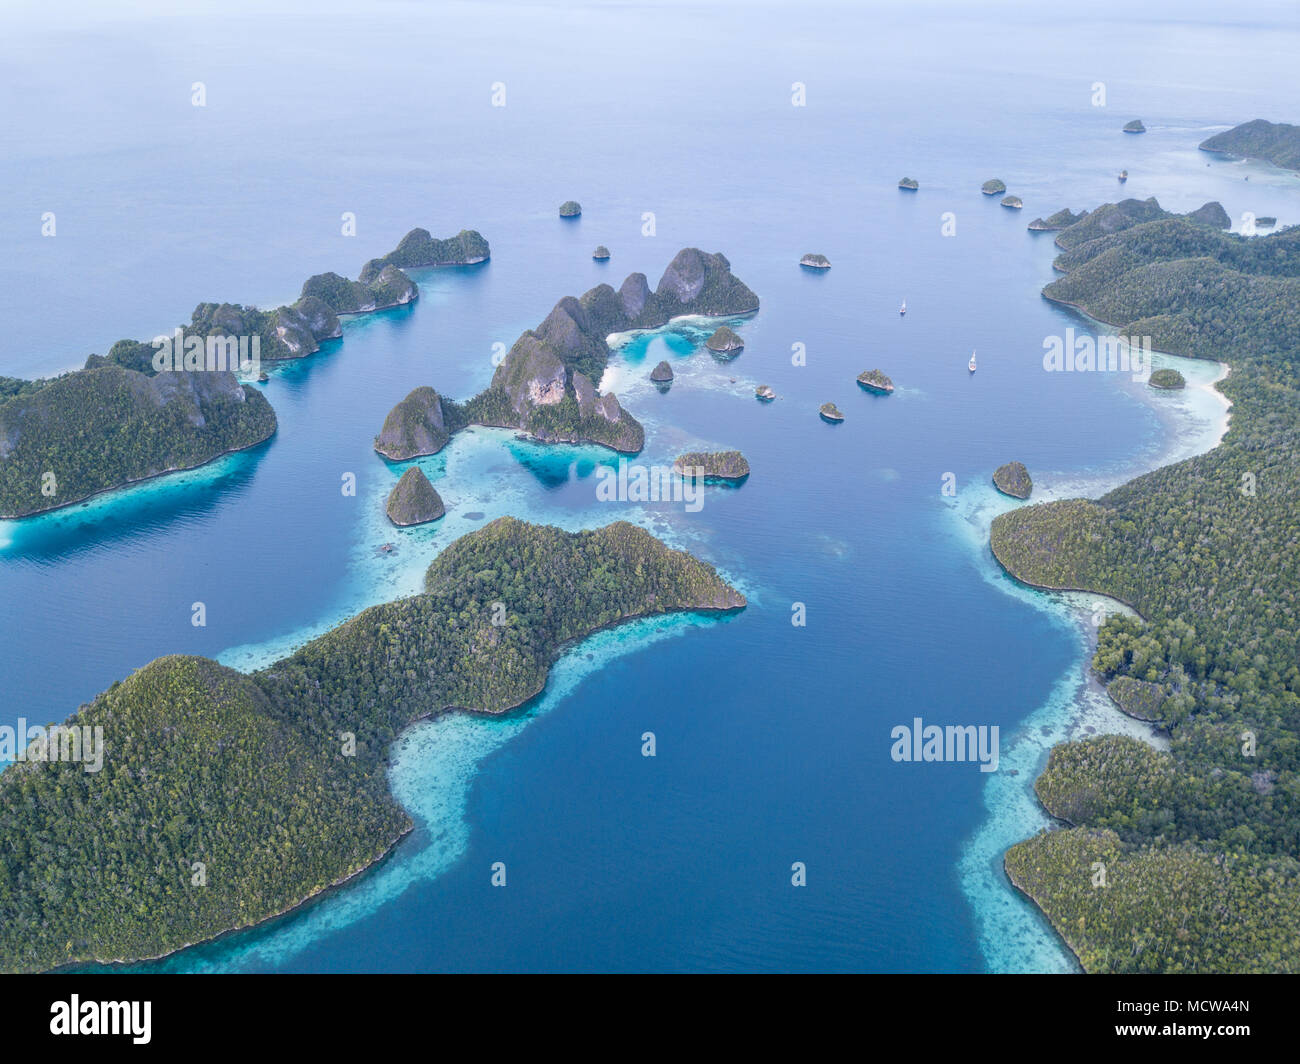 Schönen Kalkstein Inseln sind umgeben von Korallenriffen in Wayag, Raja Ampat, Indonesien. Diese Region ist für seine unglaubliche Artenvielfalt des Meeres bekannt. Stockfoto